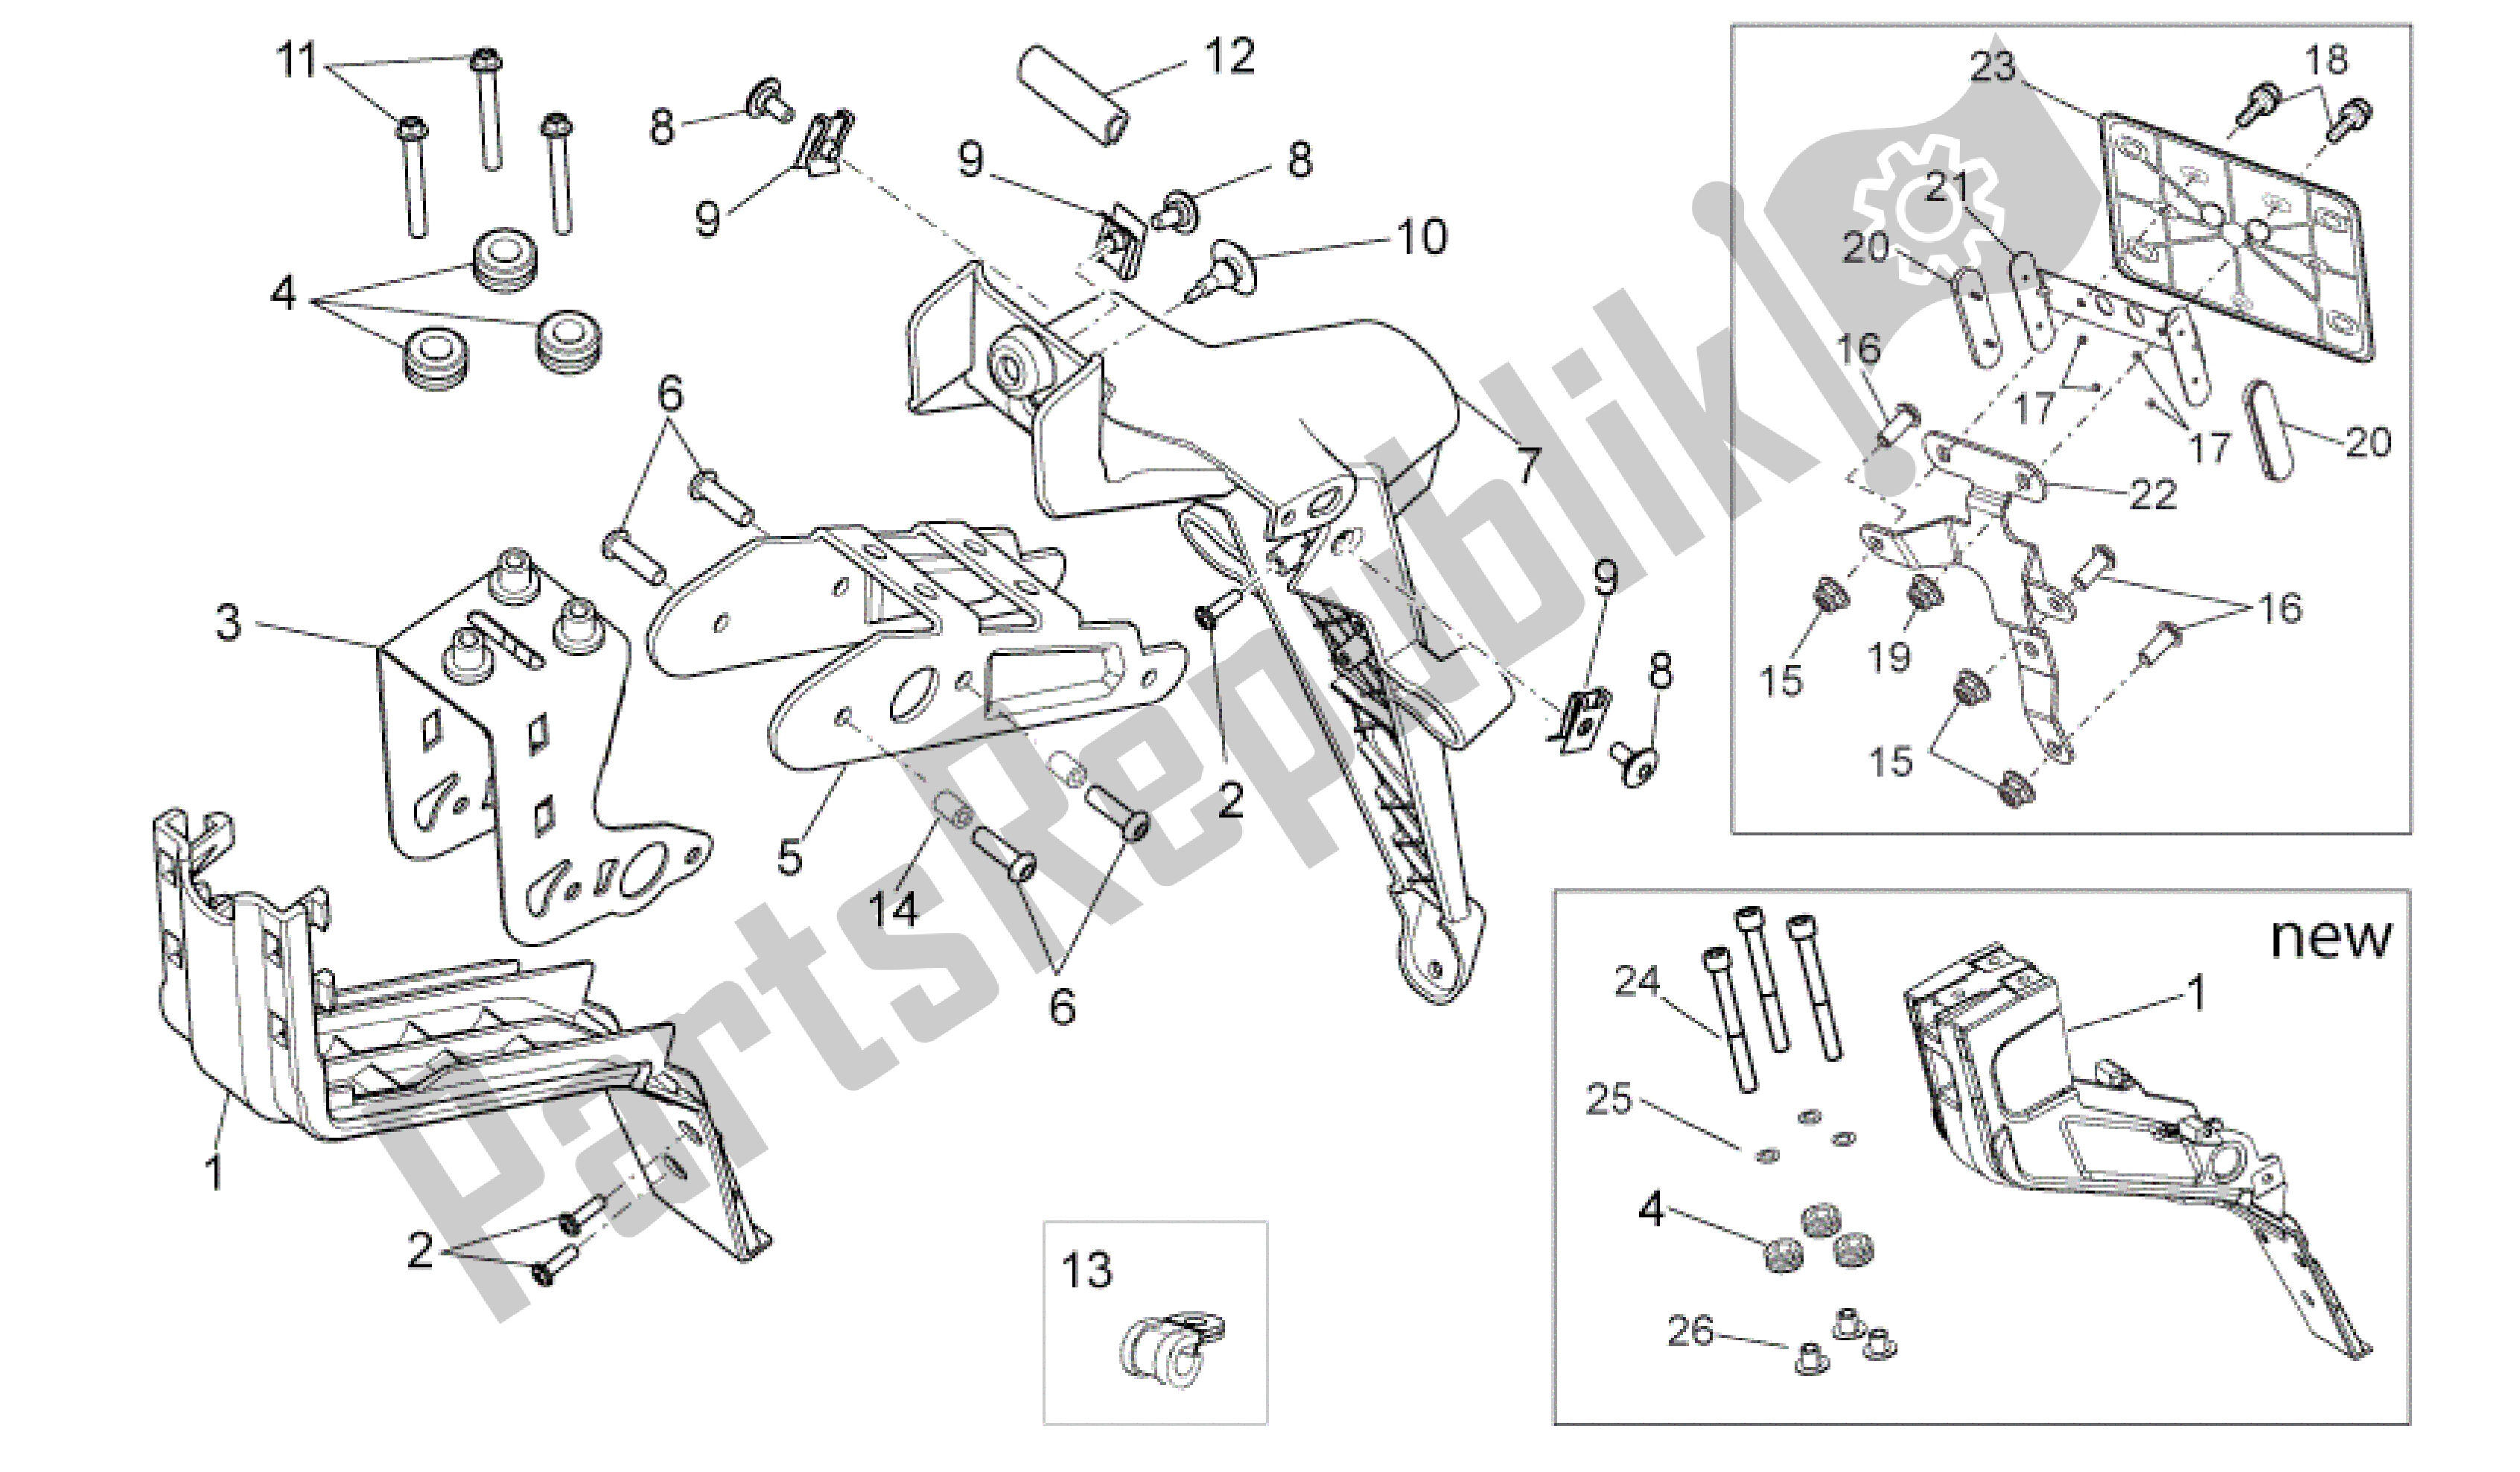 All parts for the Rear Body Iii of the Aprilia Dorsoduro 750 2008 - 2011